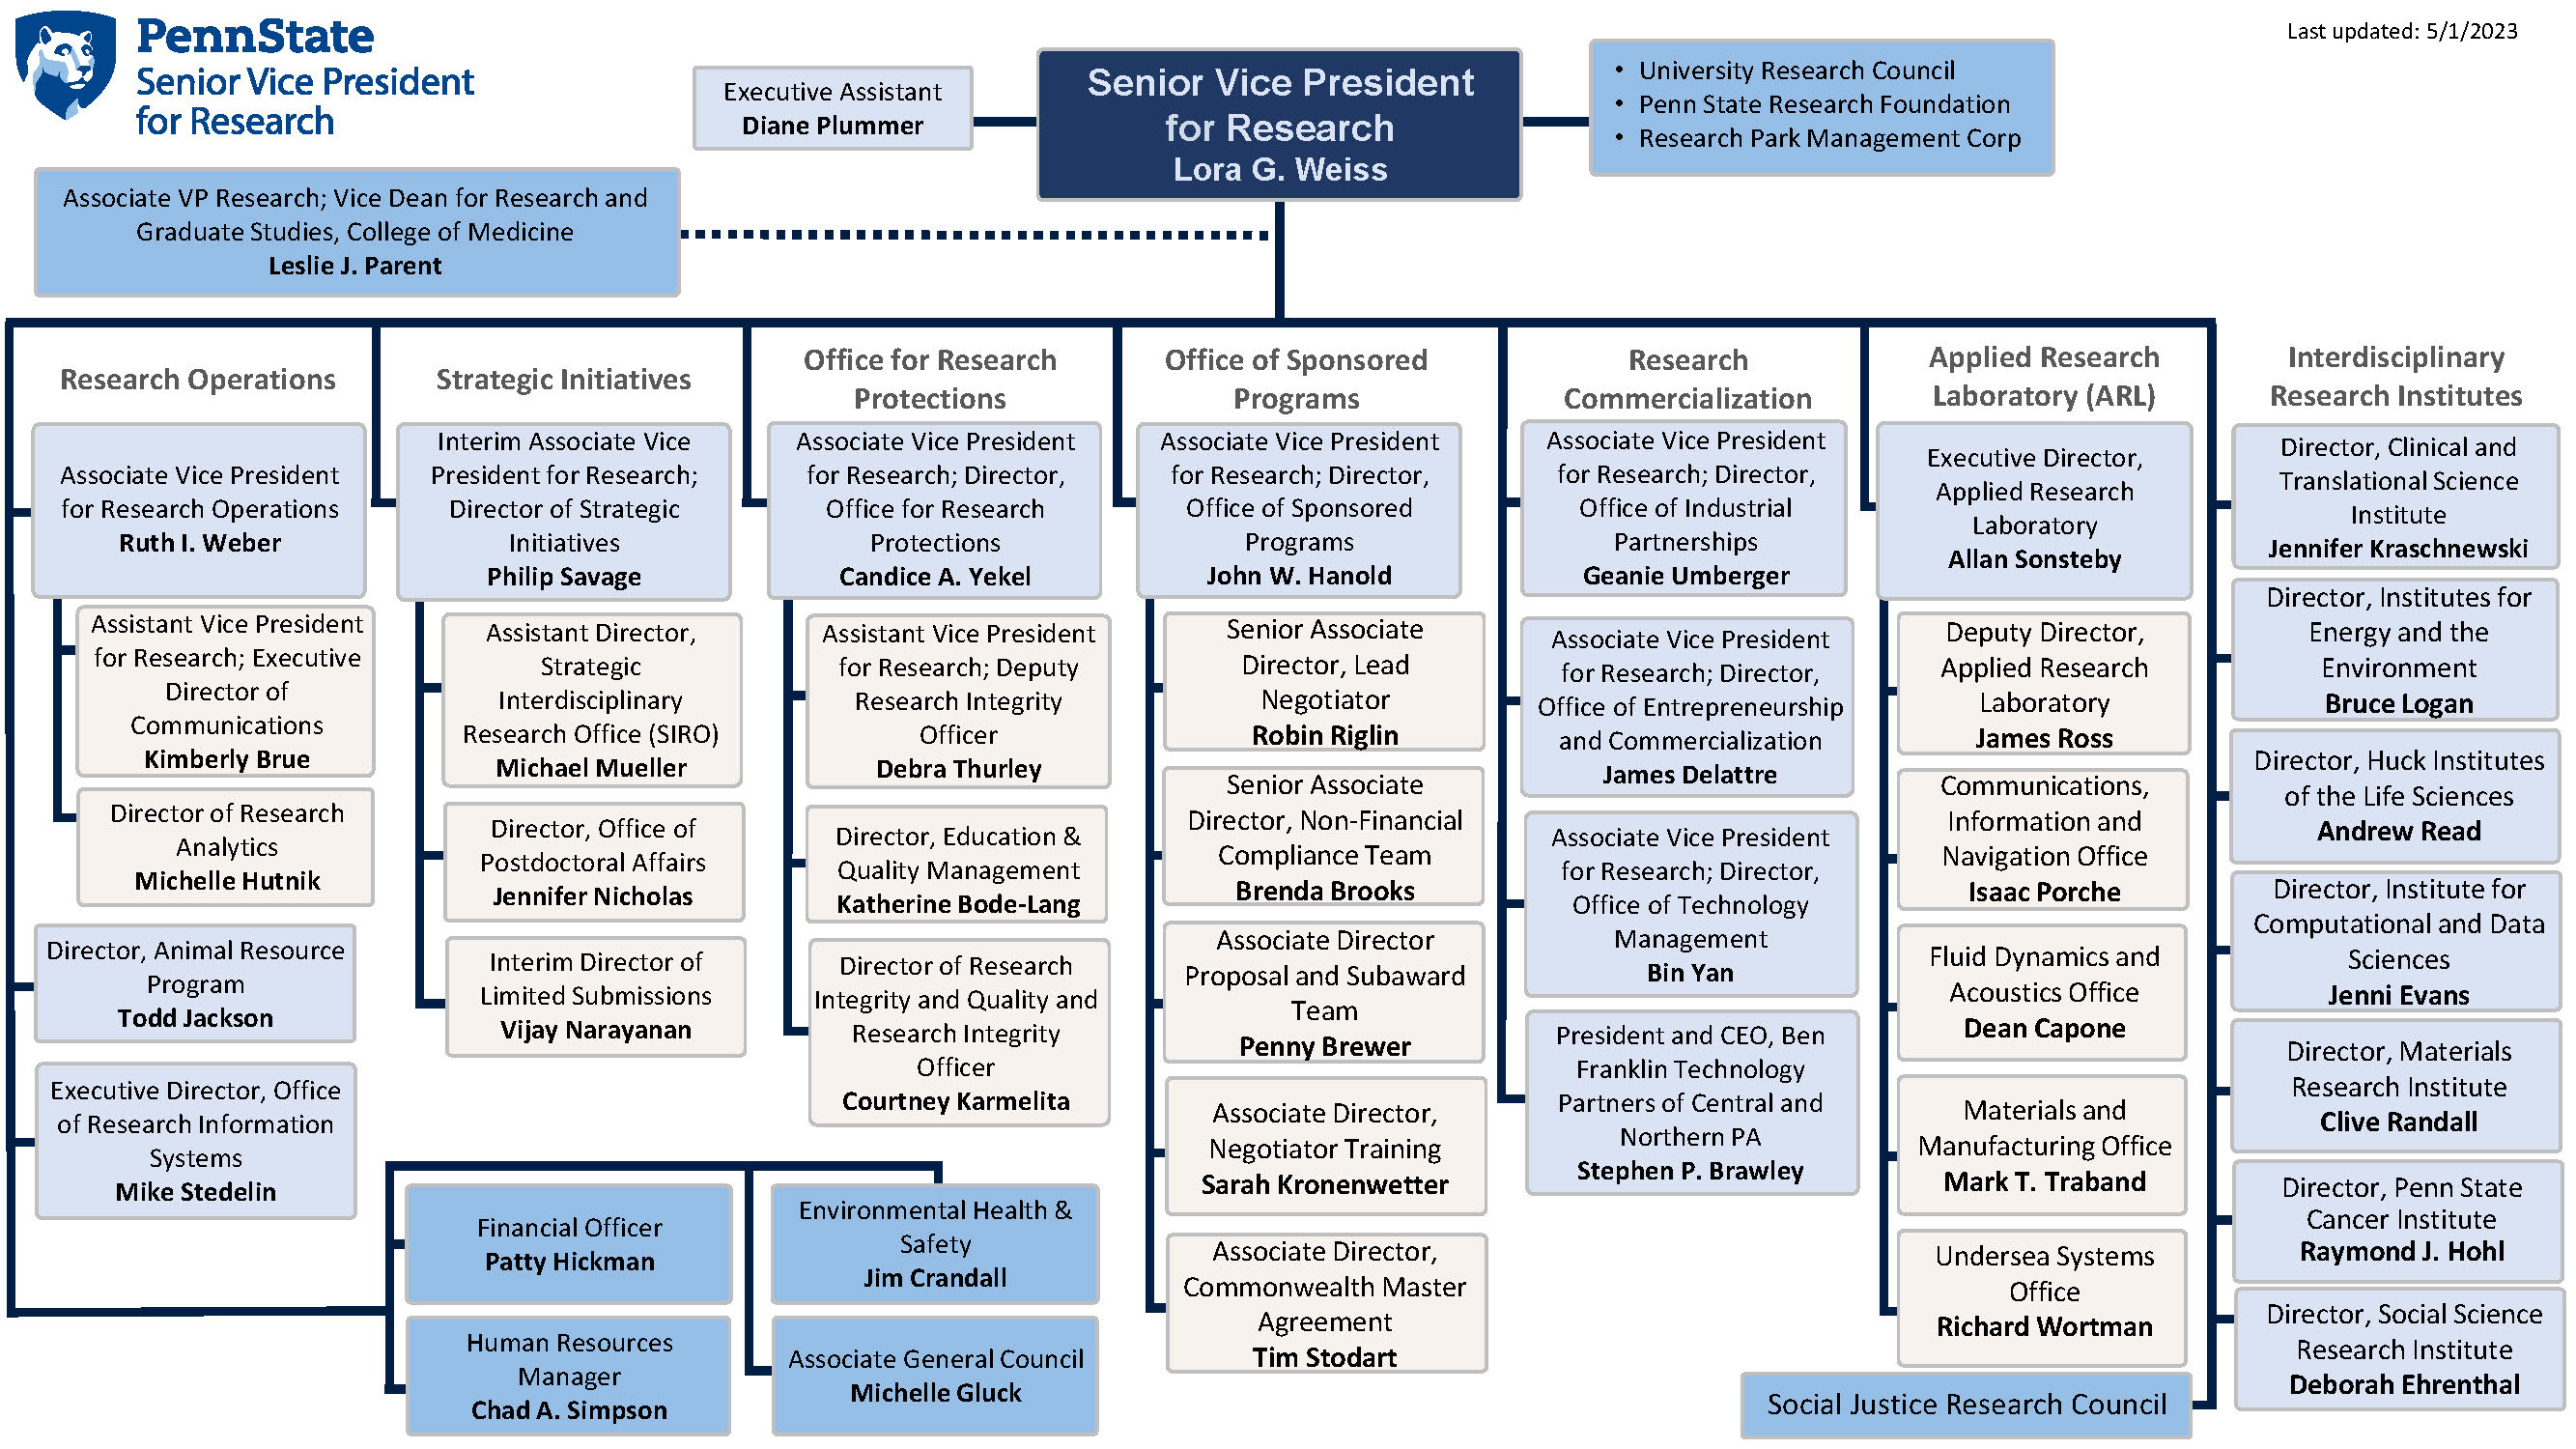 OSVPR Org Chart 5-1-23.jpg